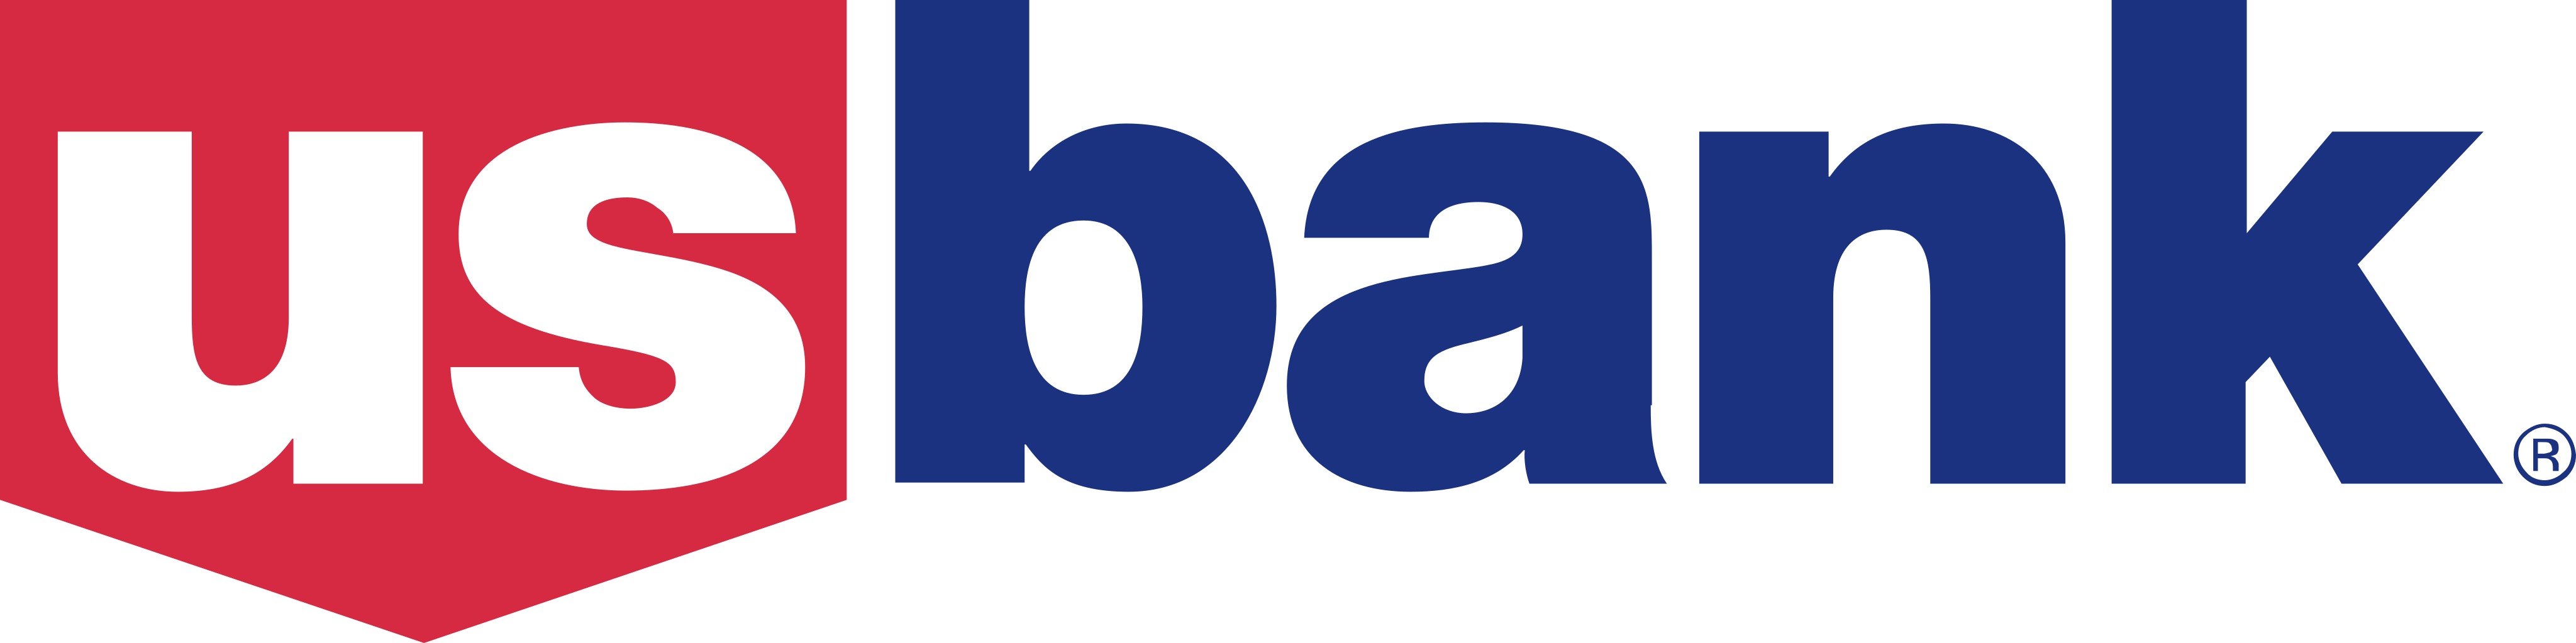 us bank logo - US Bank Logo